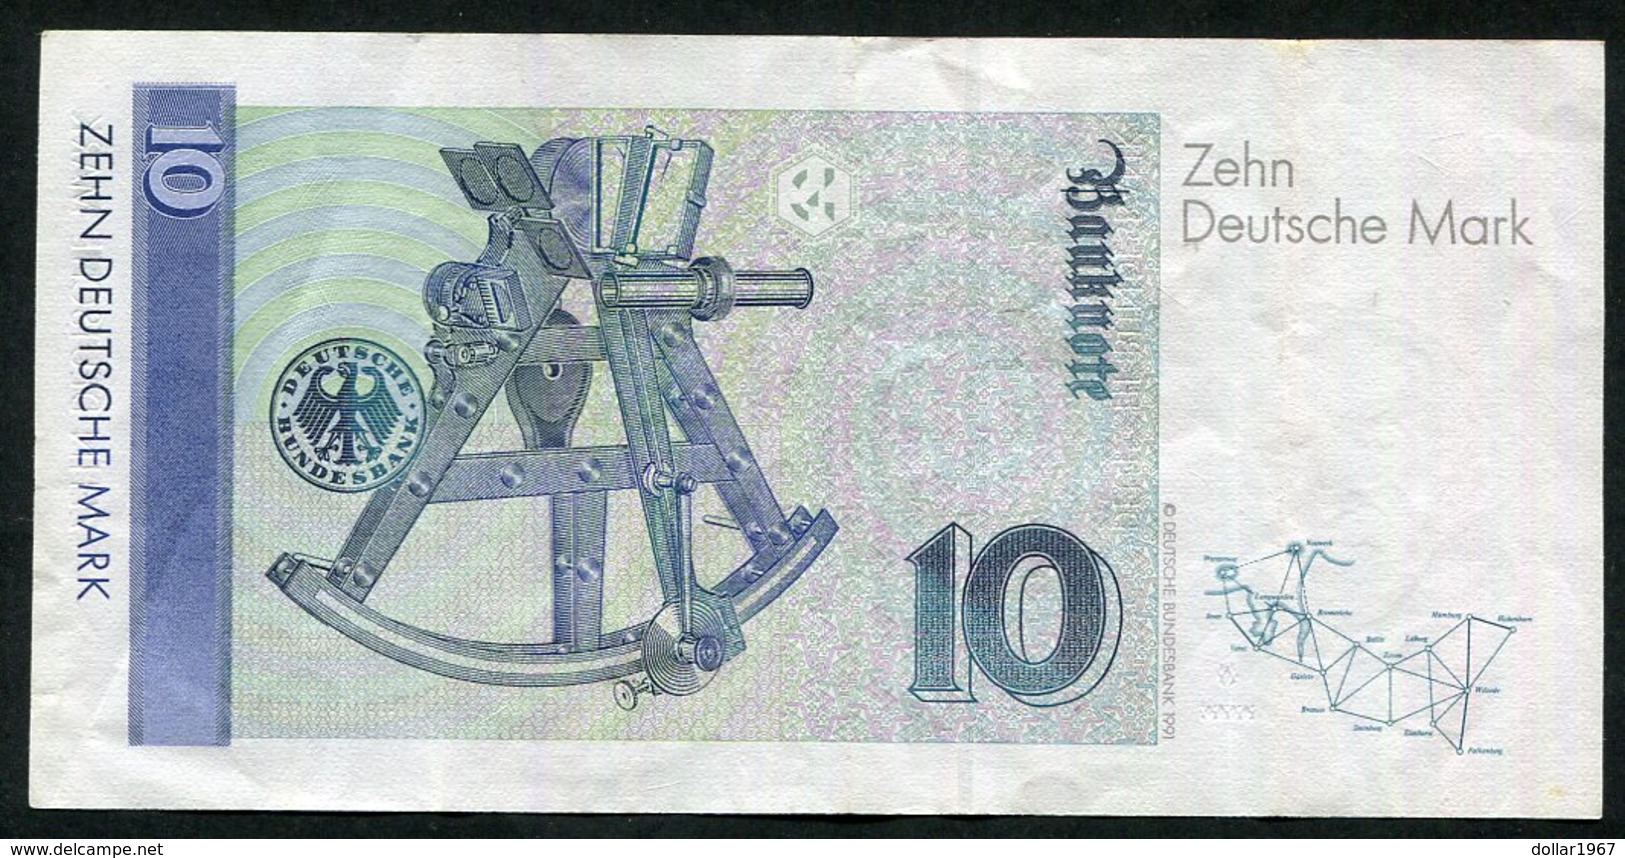 10 Dm / Deutsche Mark / Bundesbanknote 1-10-1993. GK - See The 2 Scans For Condition.(Originalscan ) - 10 Deutsche Mark